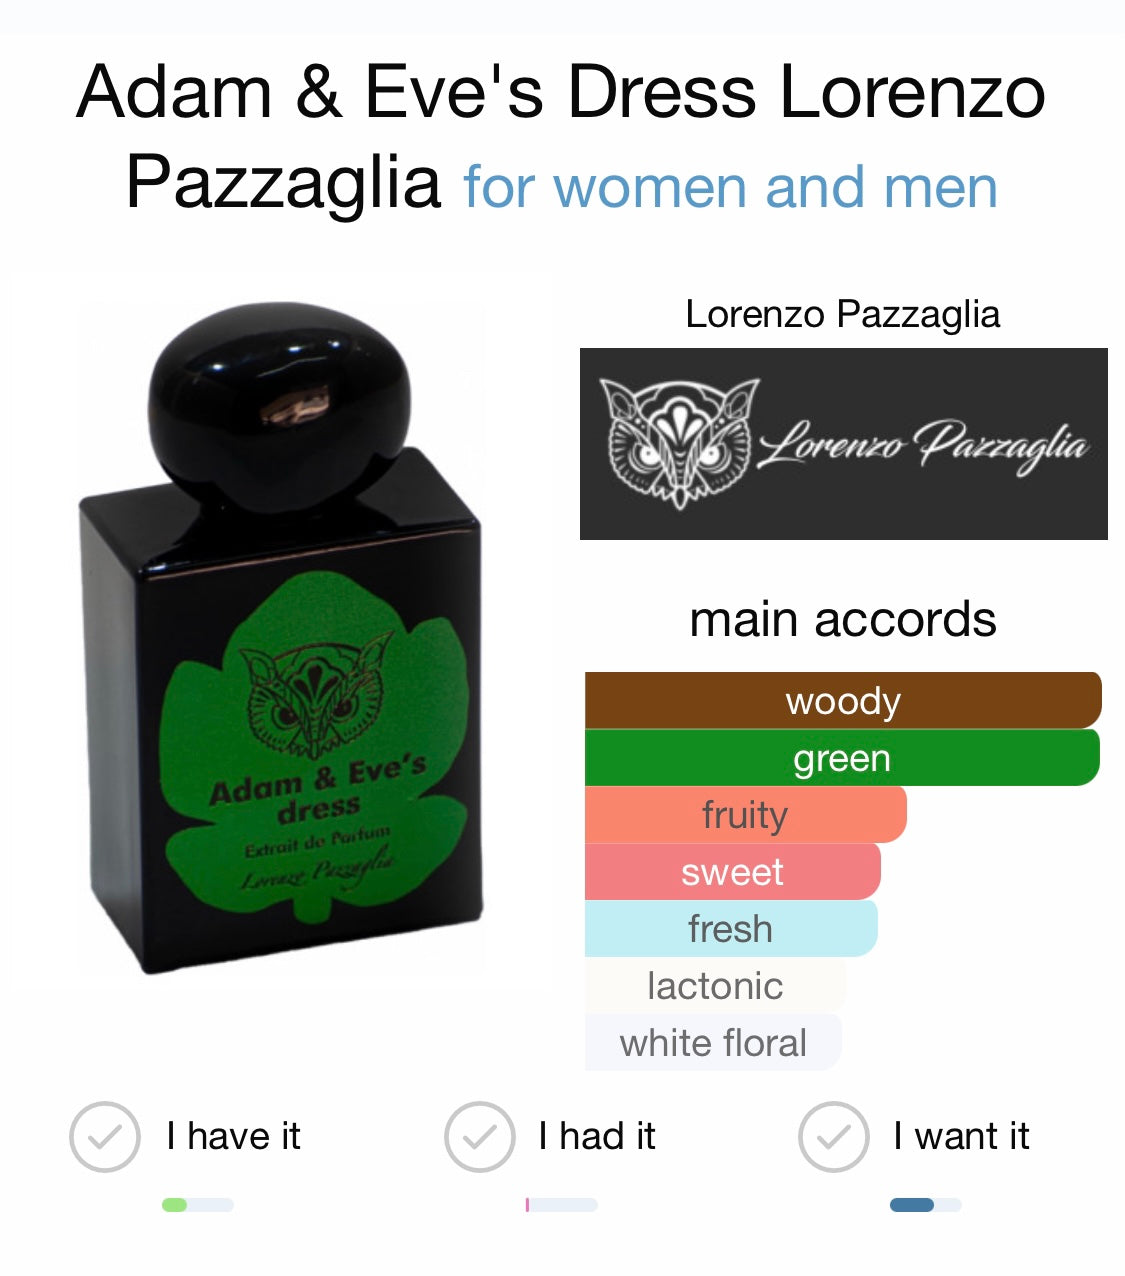 ADAM & EVE'S DRESS - LORENZO PAZZAGLIA